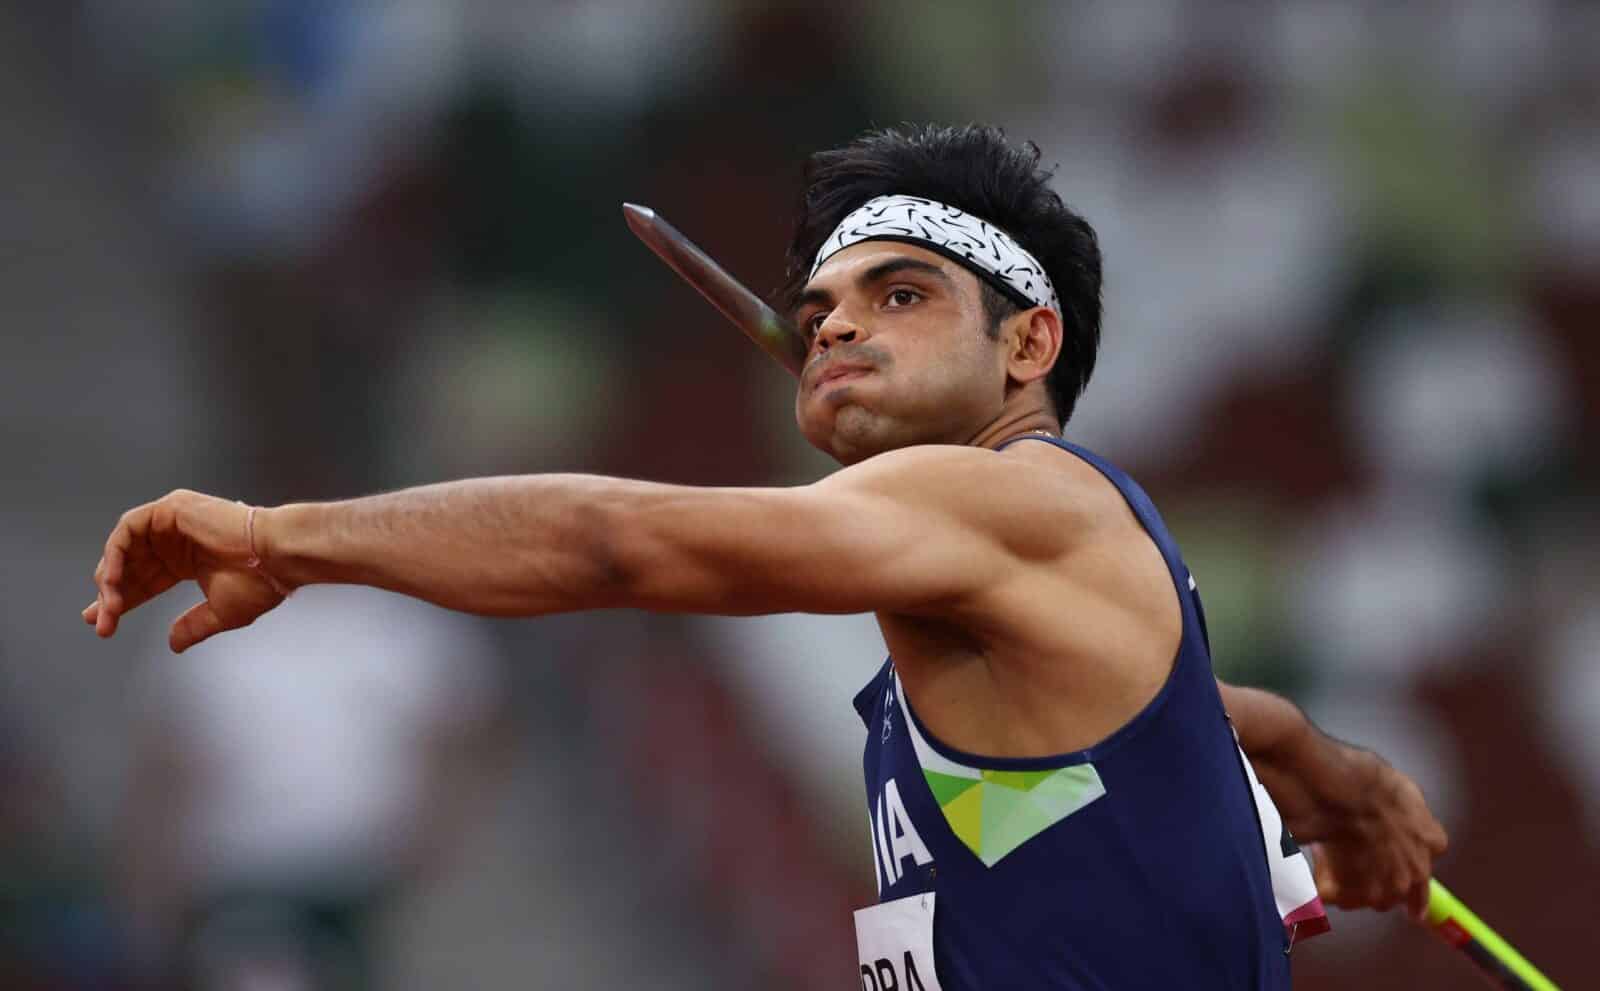 أولمبياد طوكيو: نيراج تشوبرا يفوز بذهبية الرمح ، وهو أول هندي في ألعاب القوى - أخبار